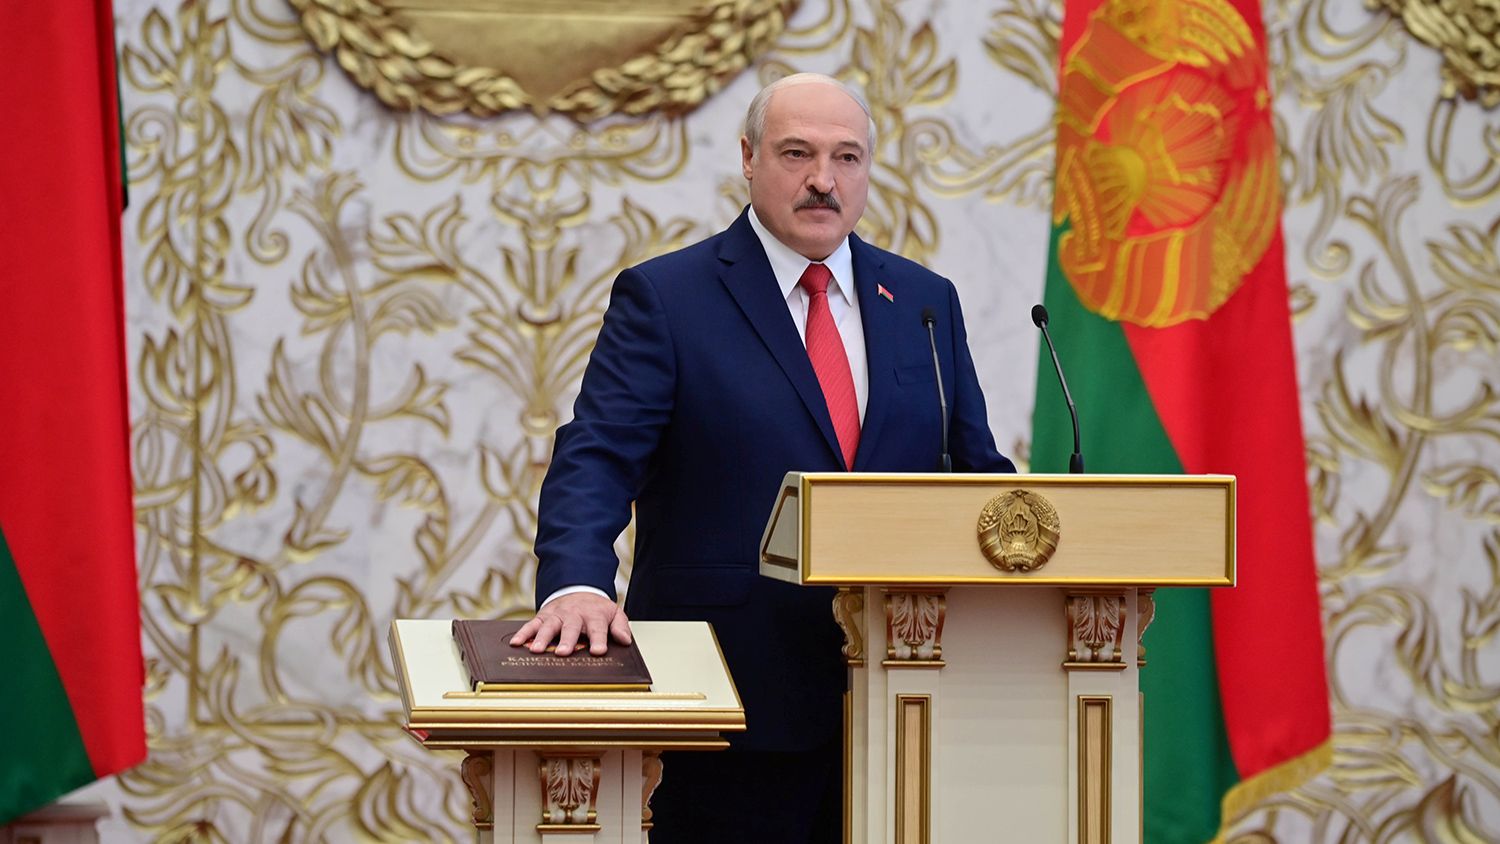 Інавгурація чи злодійський «сходняк»? Лукашенко окупував посаду президента, попри протести виборців